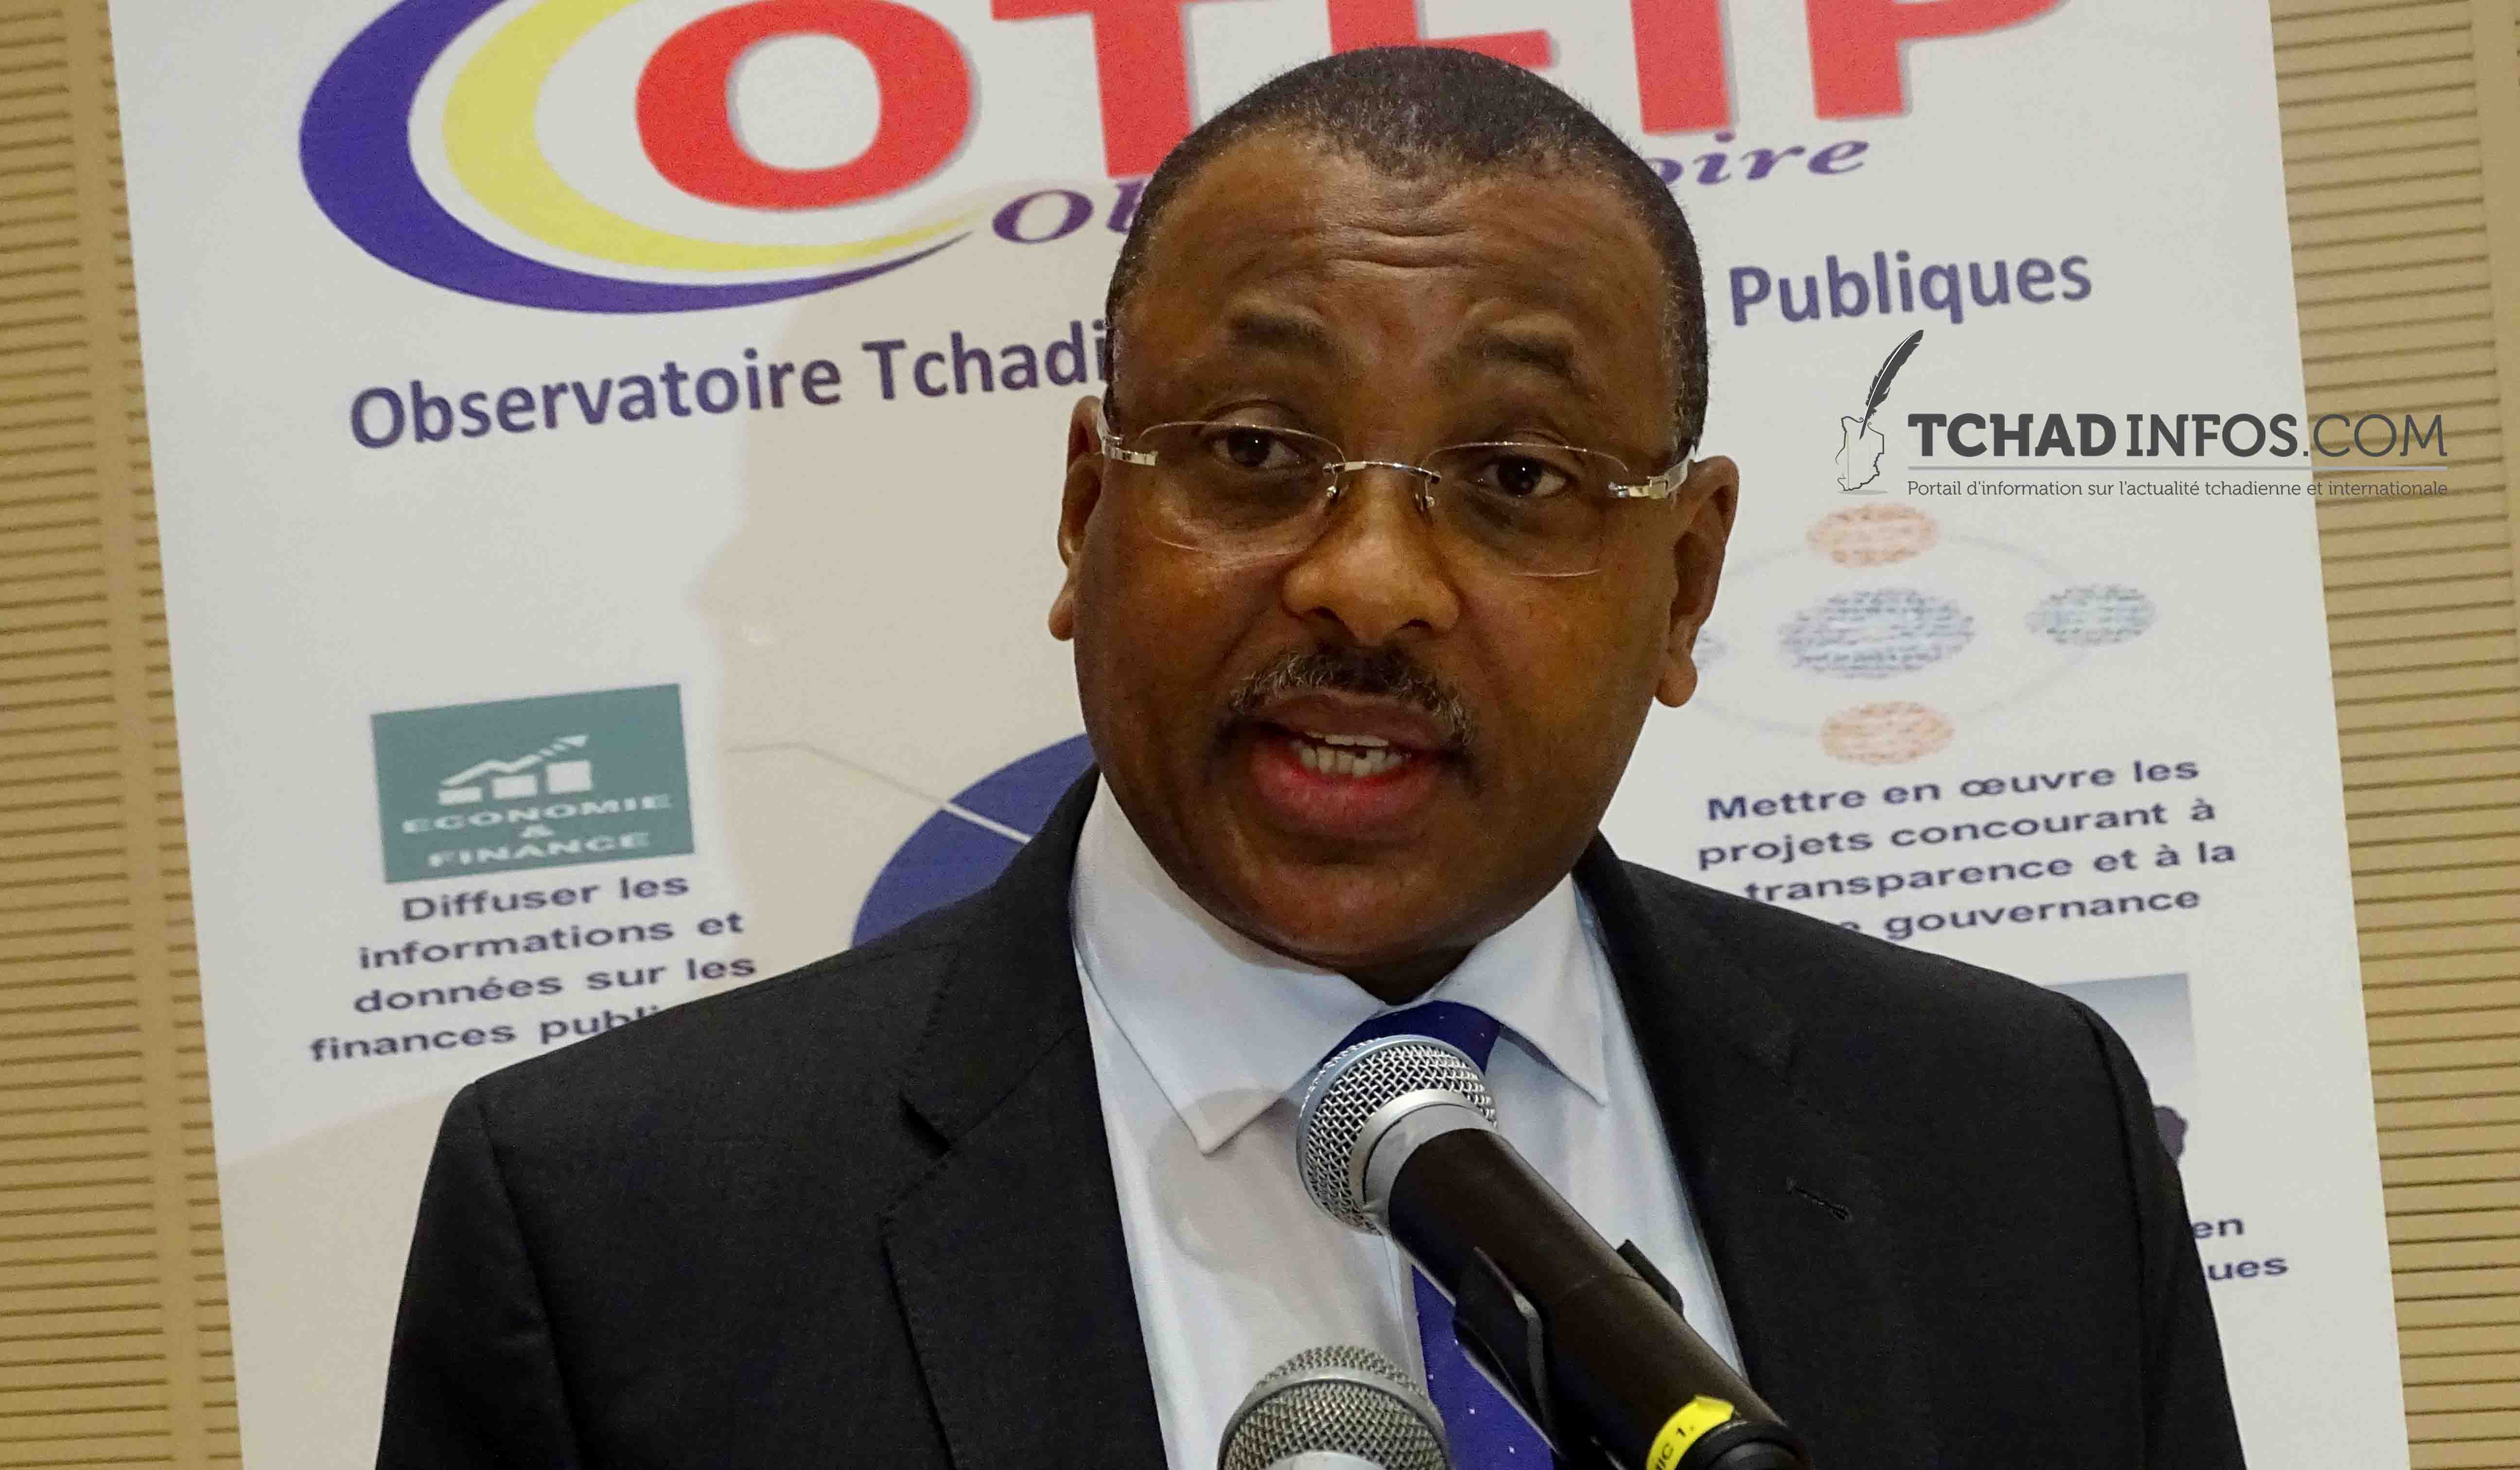 Tchad : Un observatoire pour assurer la transparence des finances publiques